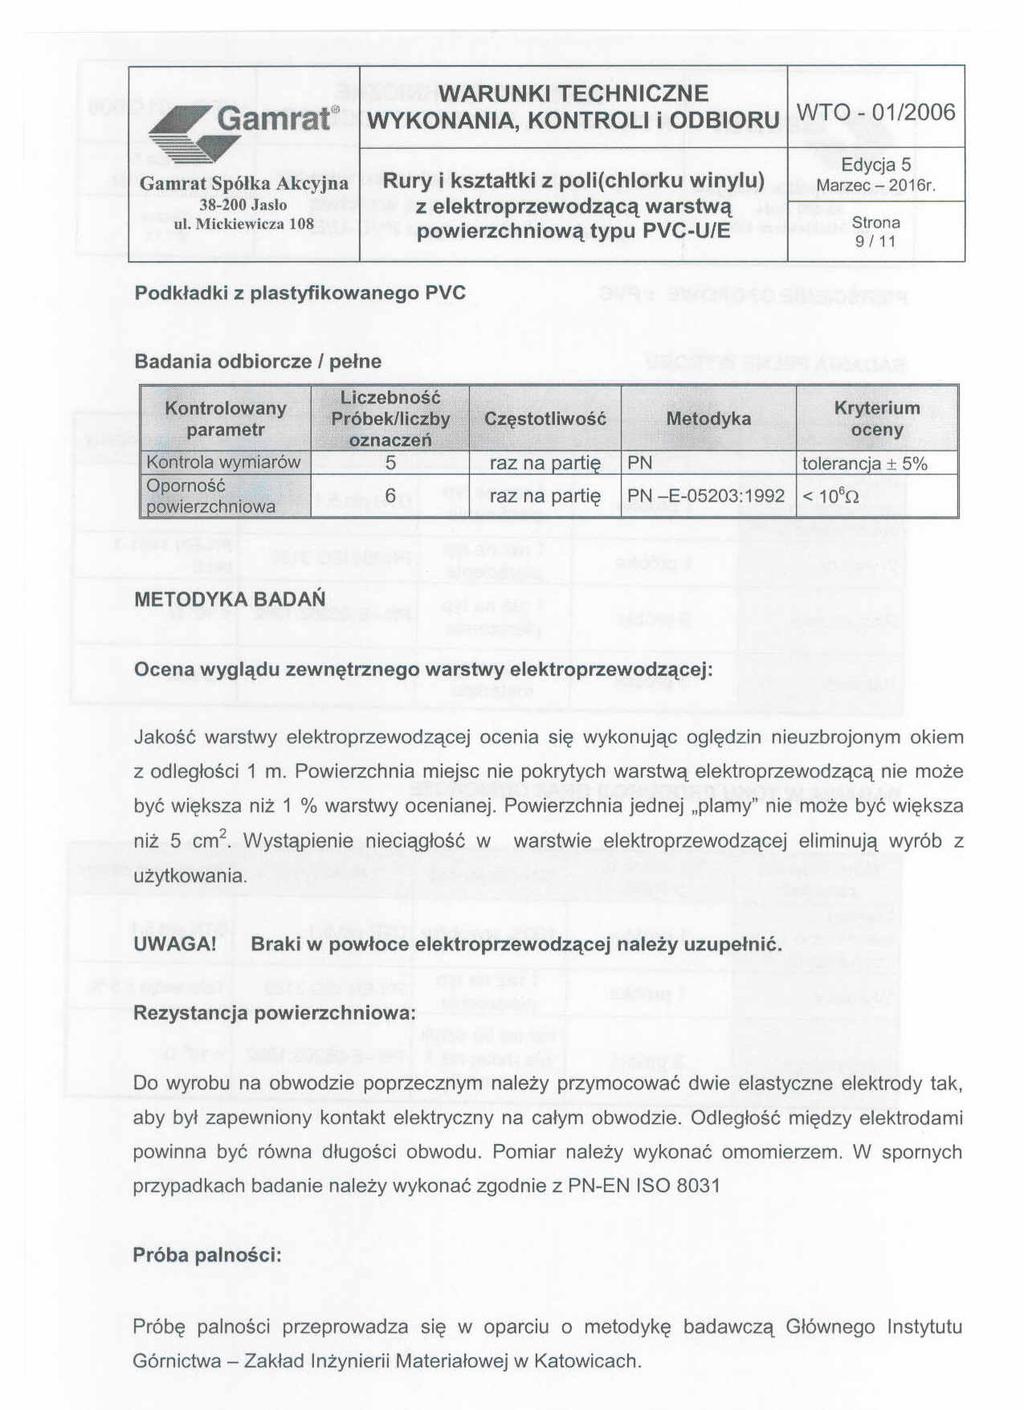 6'Gamrat" WYKONANIA, KONTROLI i ODBIORU WTO - 01/2006 Edycja5 Gamrat Spólka Akcyjna Rury i ksztahki z poli(chlorku winylu) Marzec - 2016r. " ul.